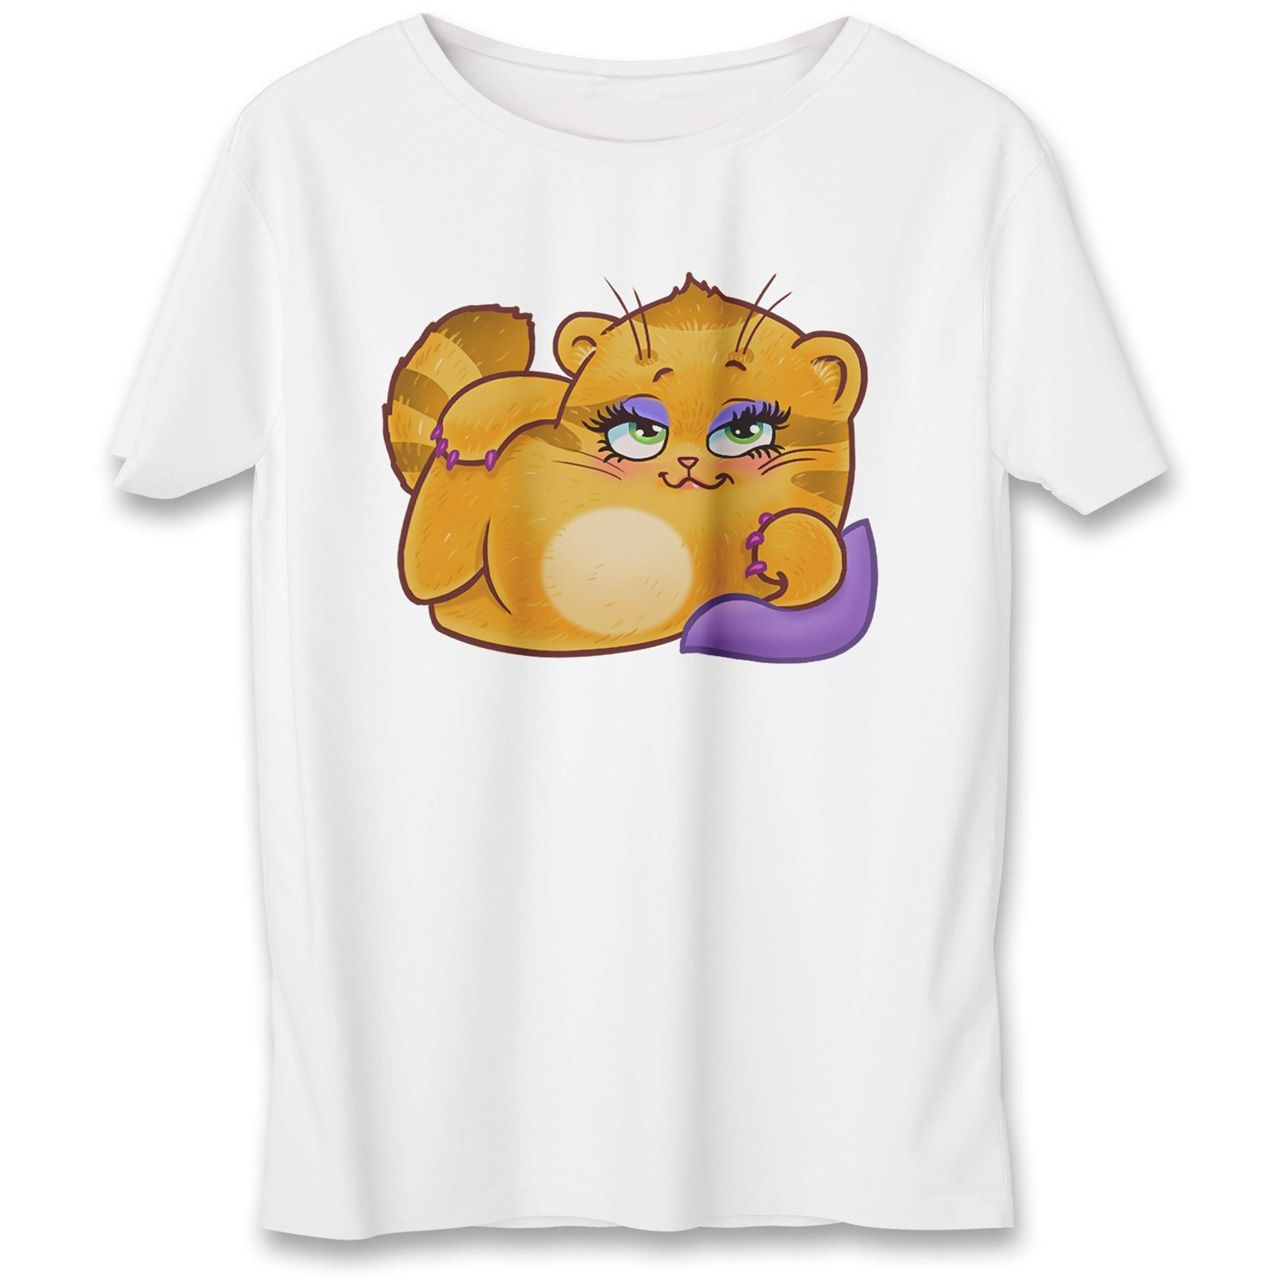 تی شرت به رسم طرح استیکر گربه کد 562 -  - 1